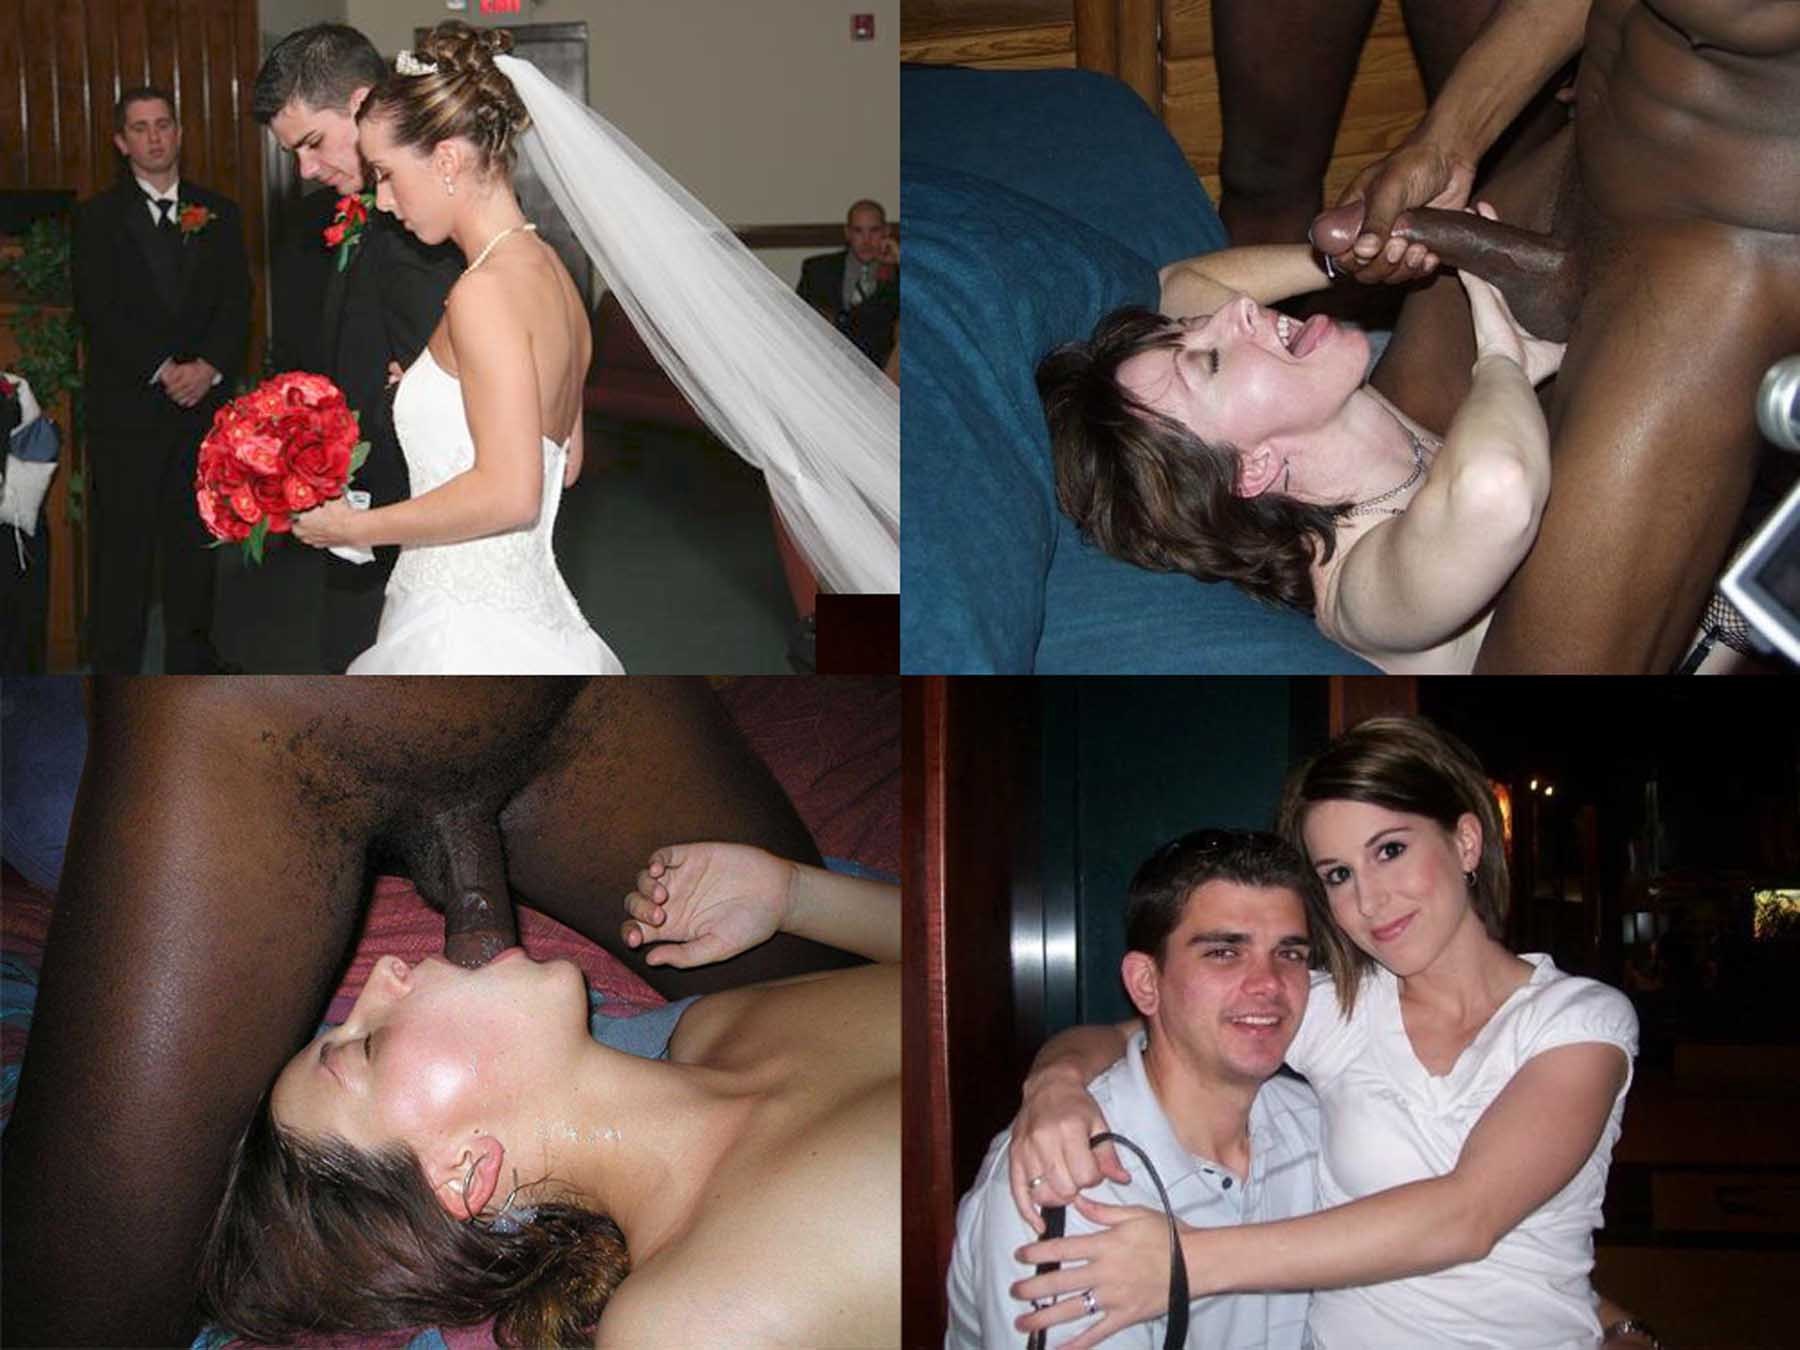 Porn Wedding Band (76 photos)